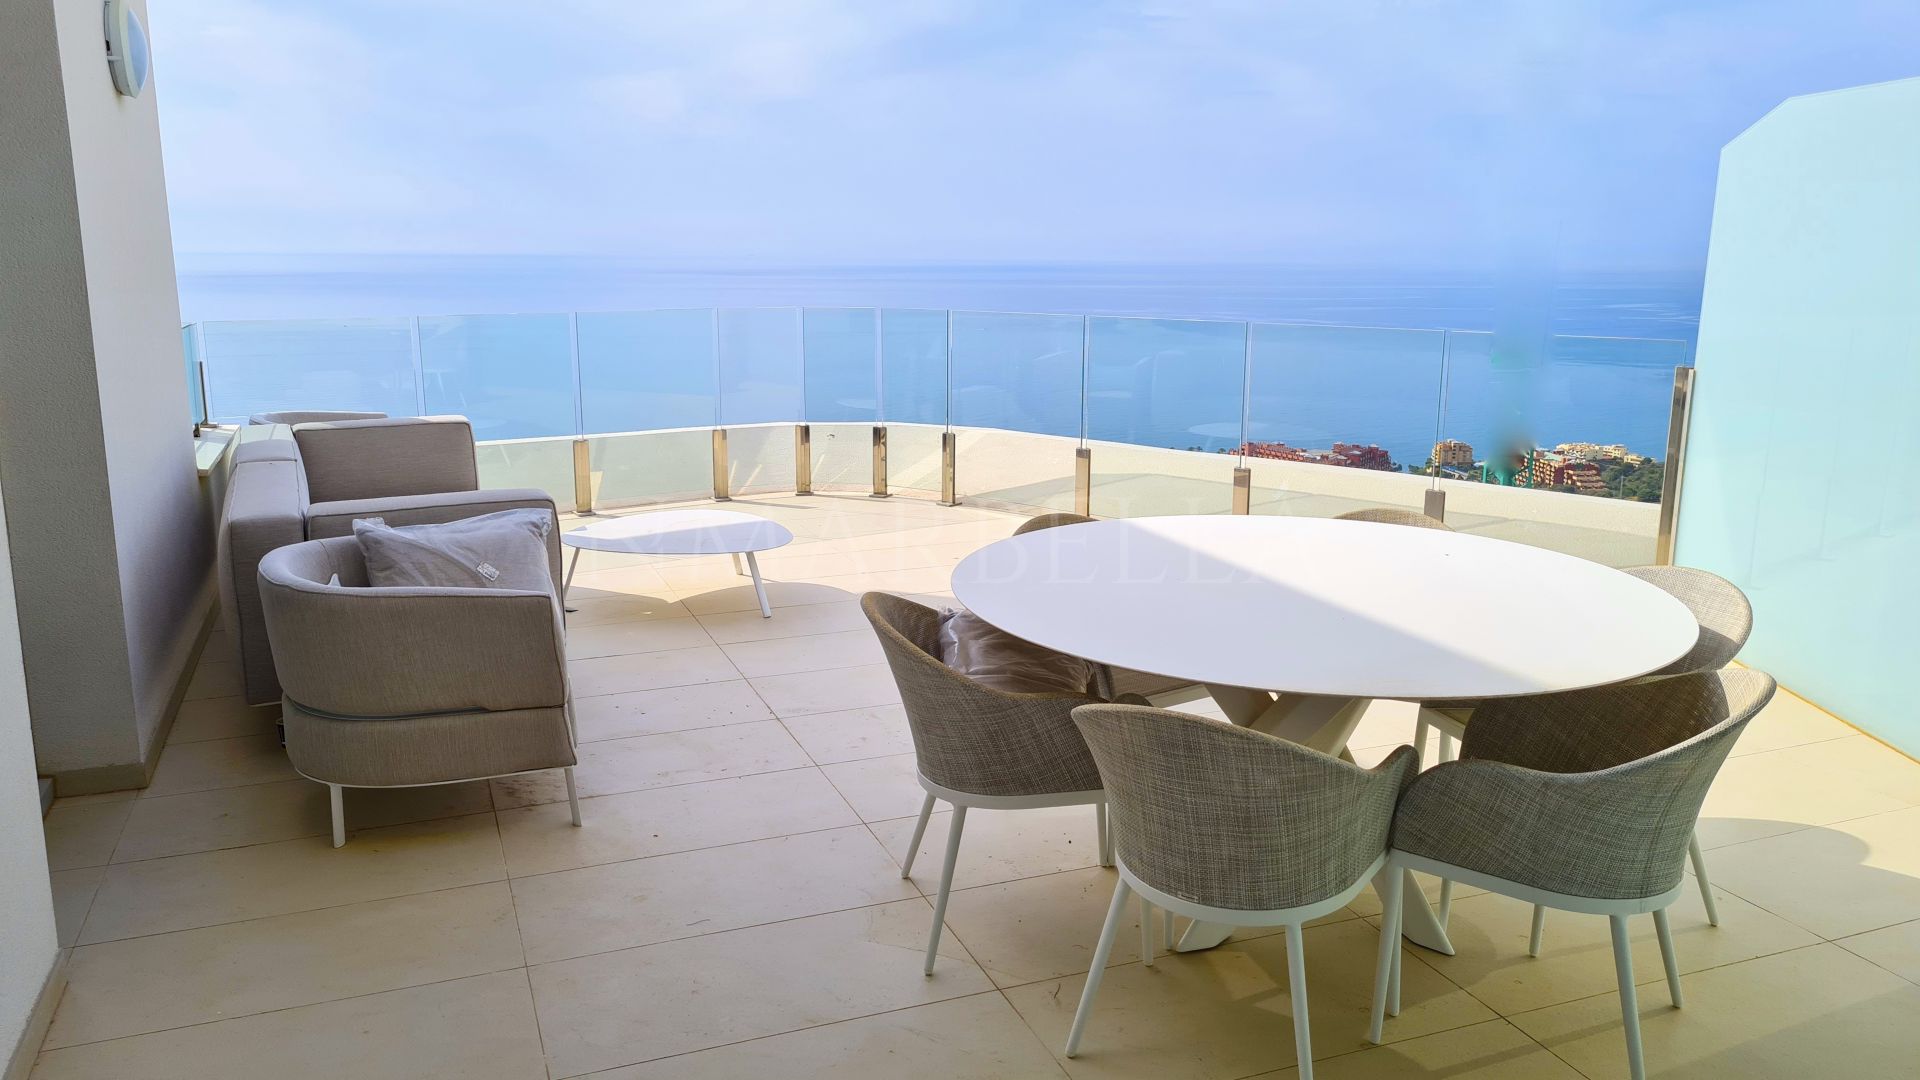 Nuevo dúplex ático en venta en Benalmadena con vistas panorámicas al mar